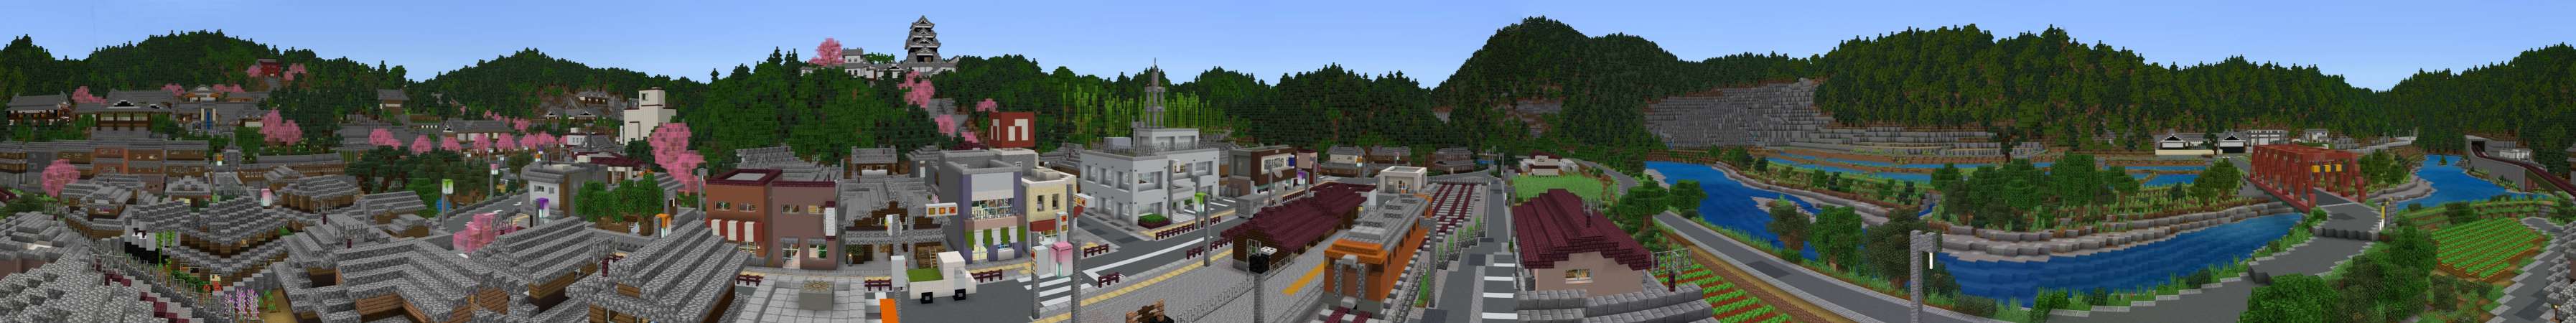 Hot Spring Village In Minecraft Marketplace Minecraft